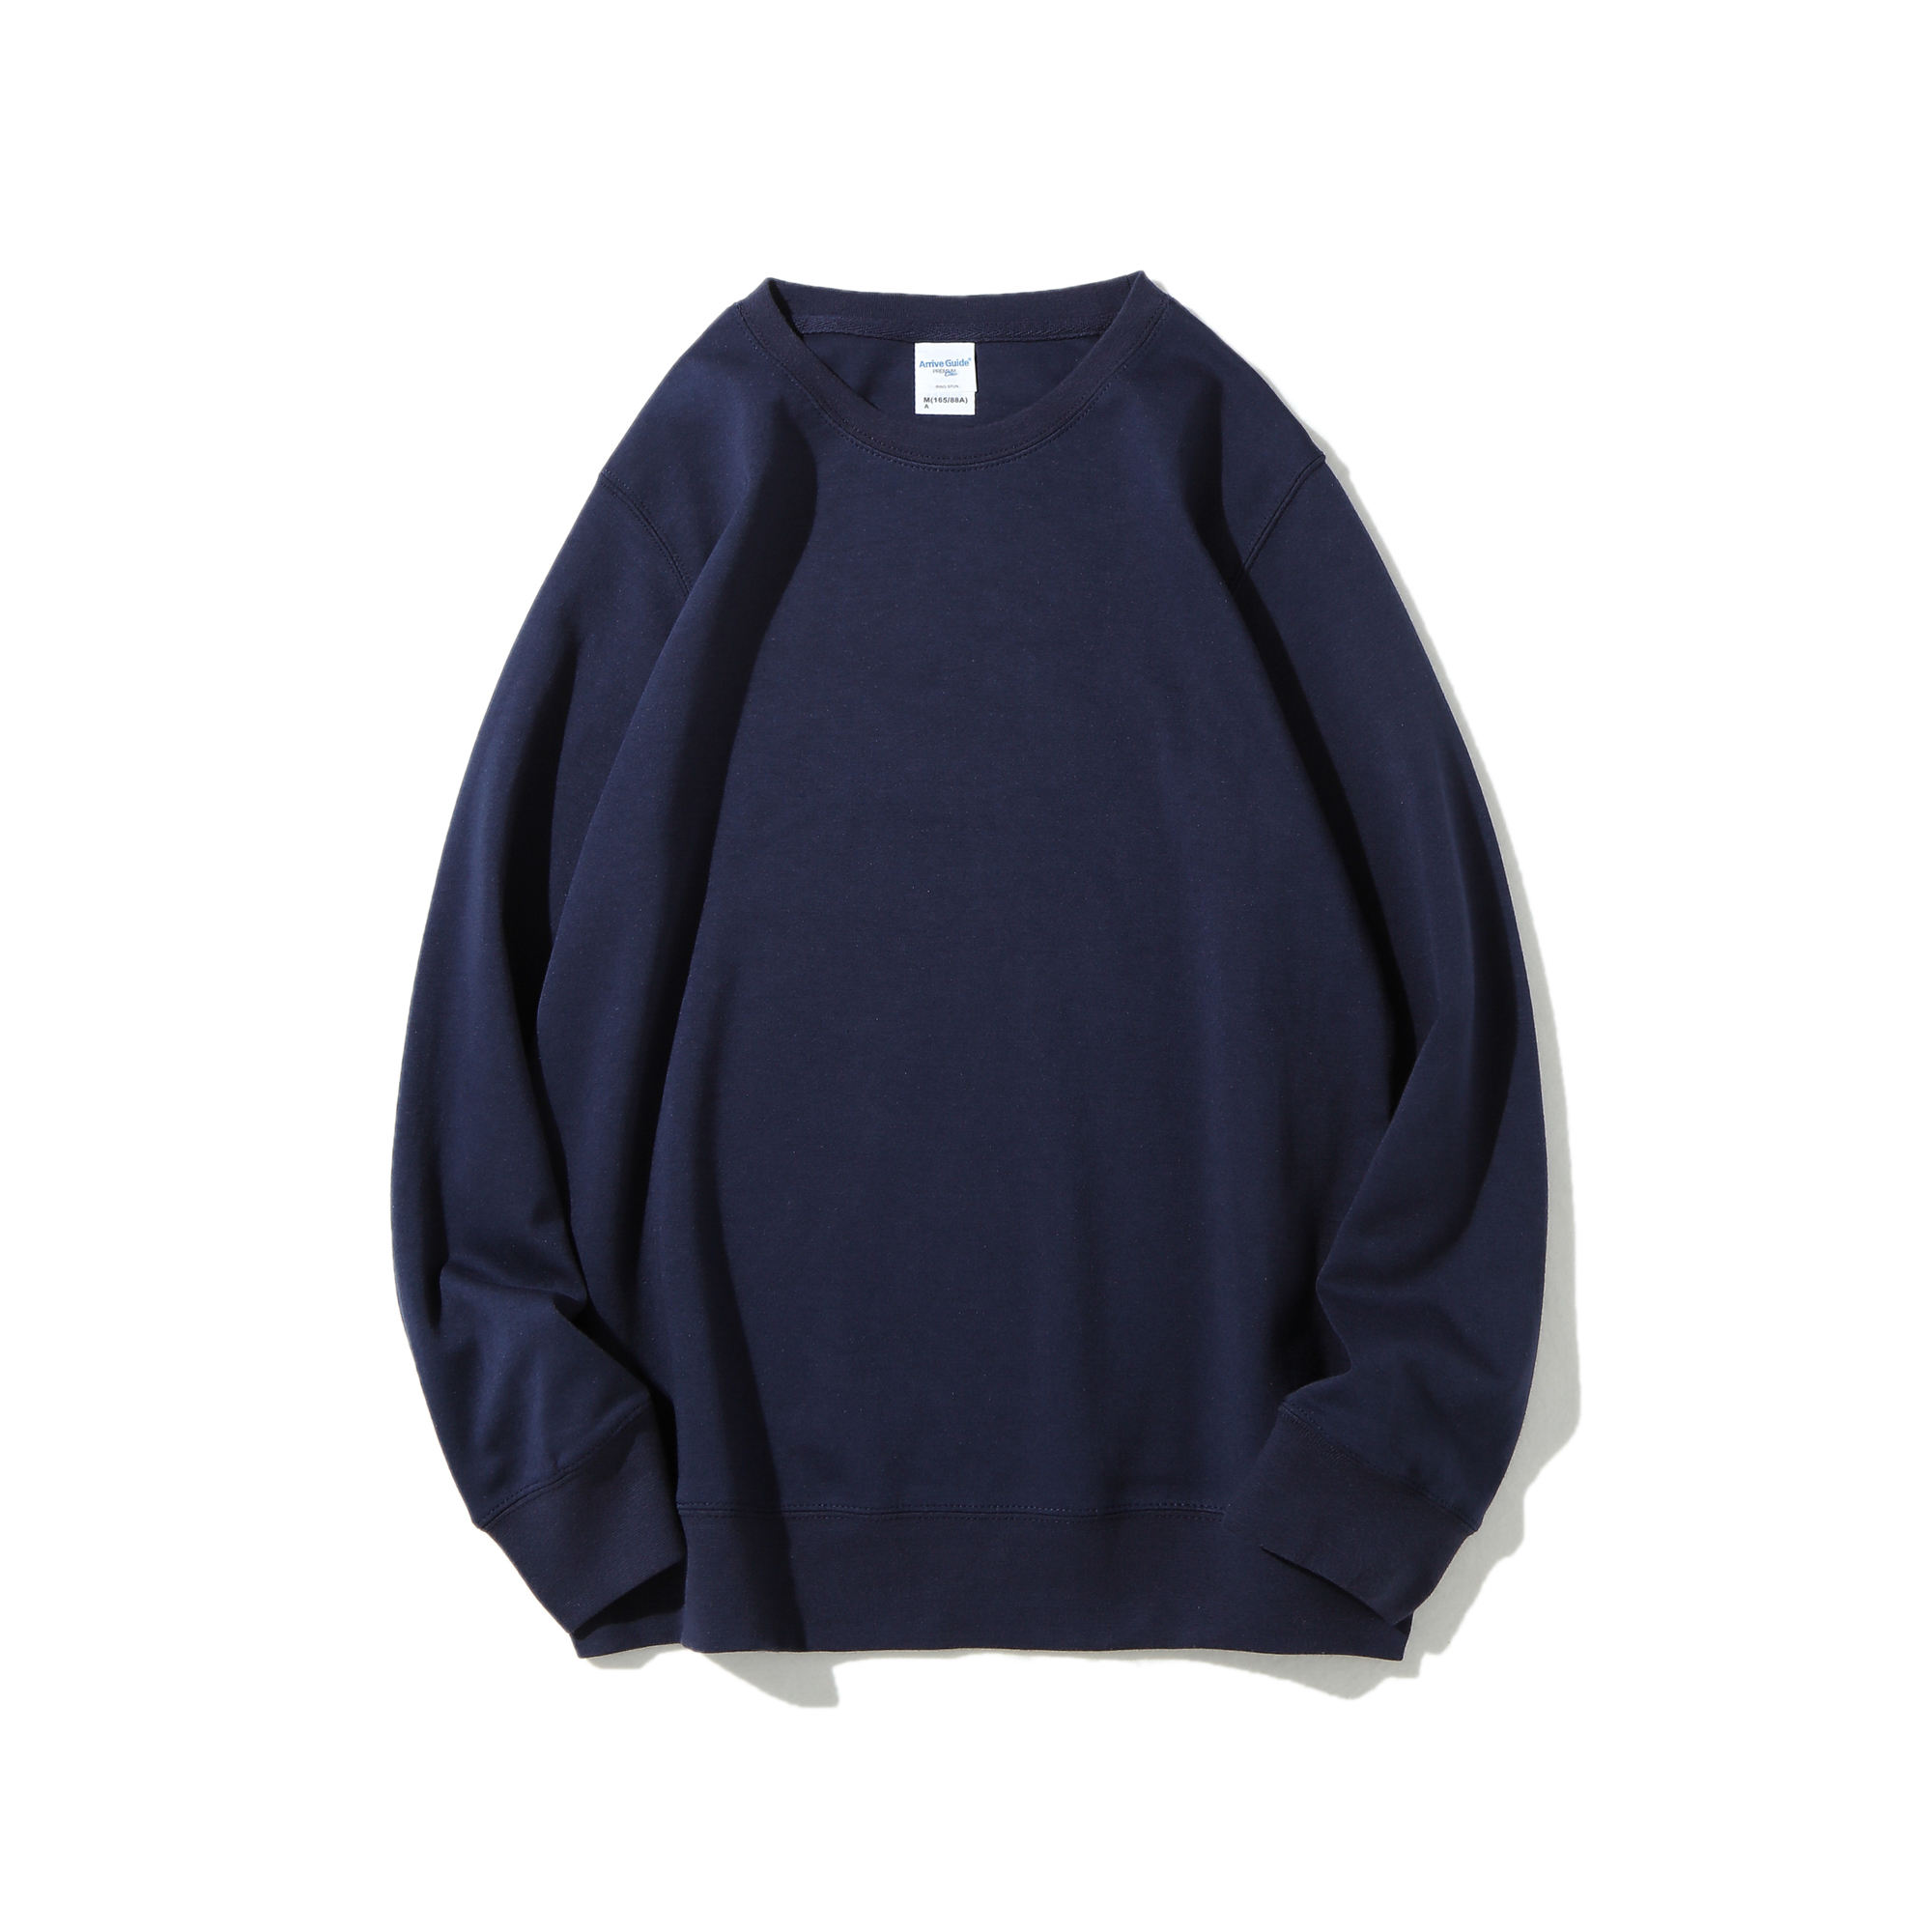 Sweatshirt Fleece Fabric Sweatshirt Supplier Customized Sweatshirt